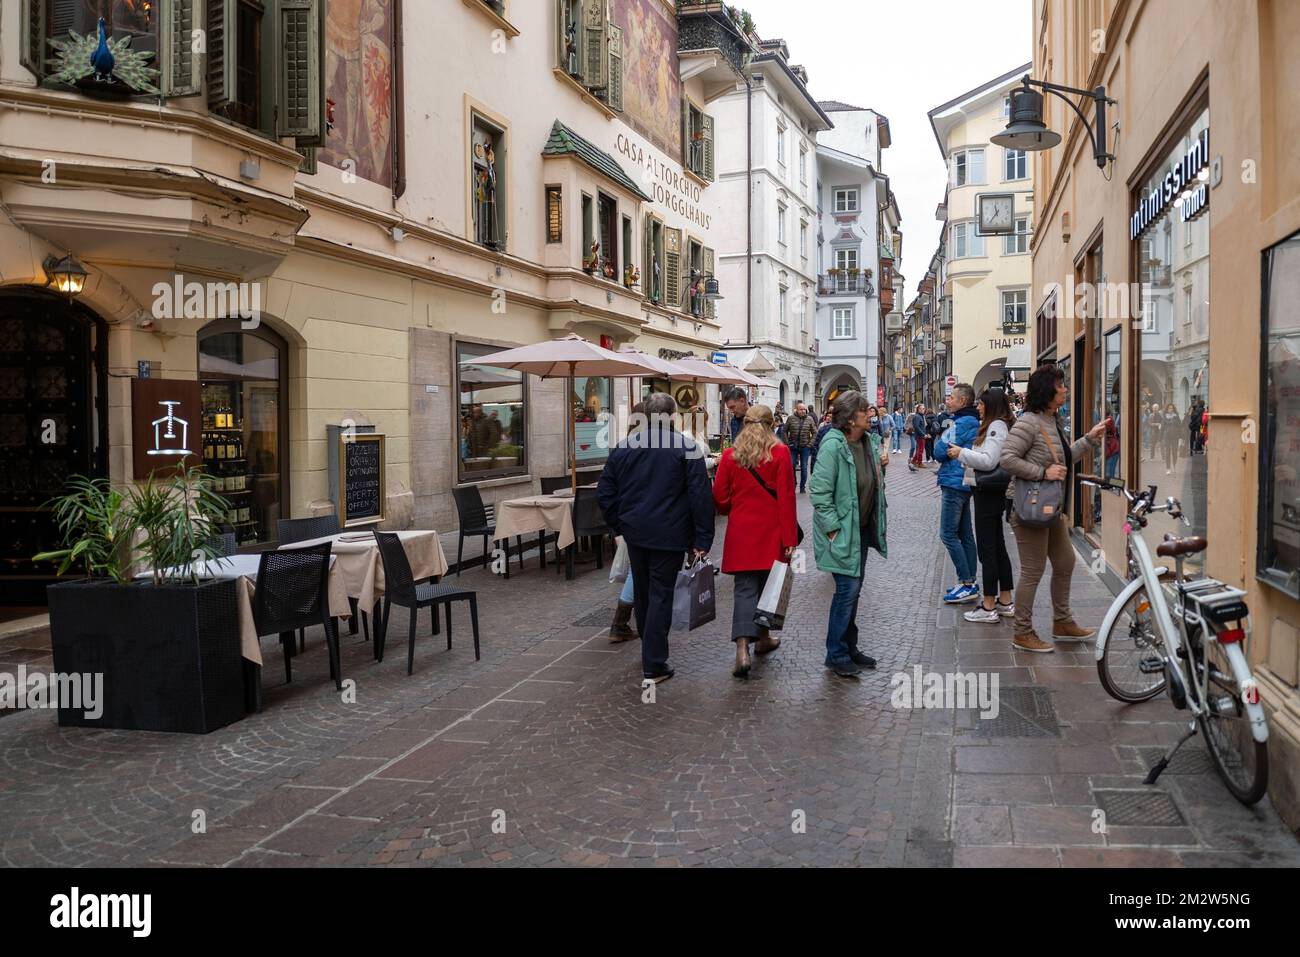 Bozen, Italien - 1. November 2022: Blick auf die Straße in der Altstadt von Bozen, Autonome Provinz Bozen, Trentino-Südtirol, Norditalien Stockfoto